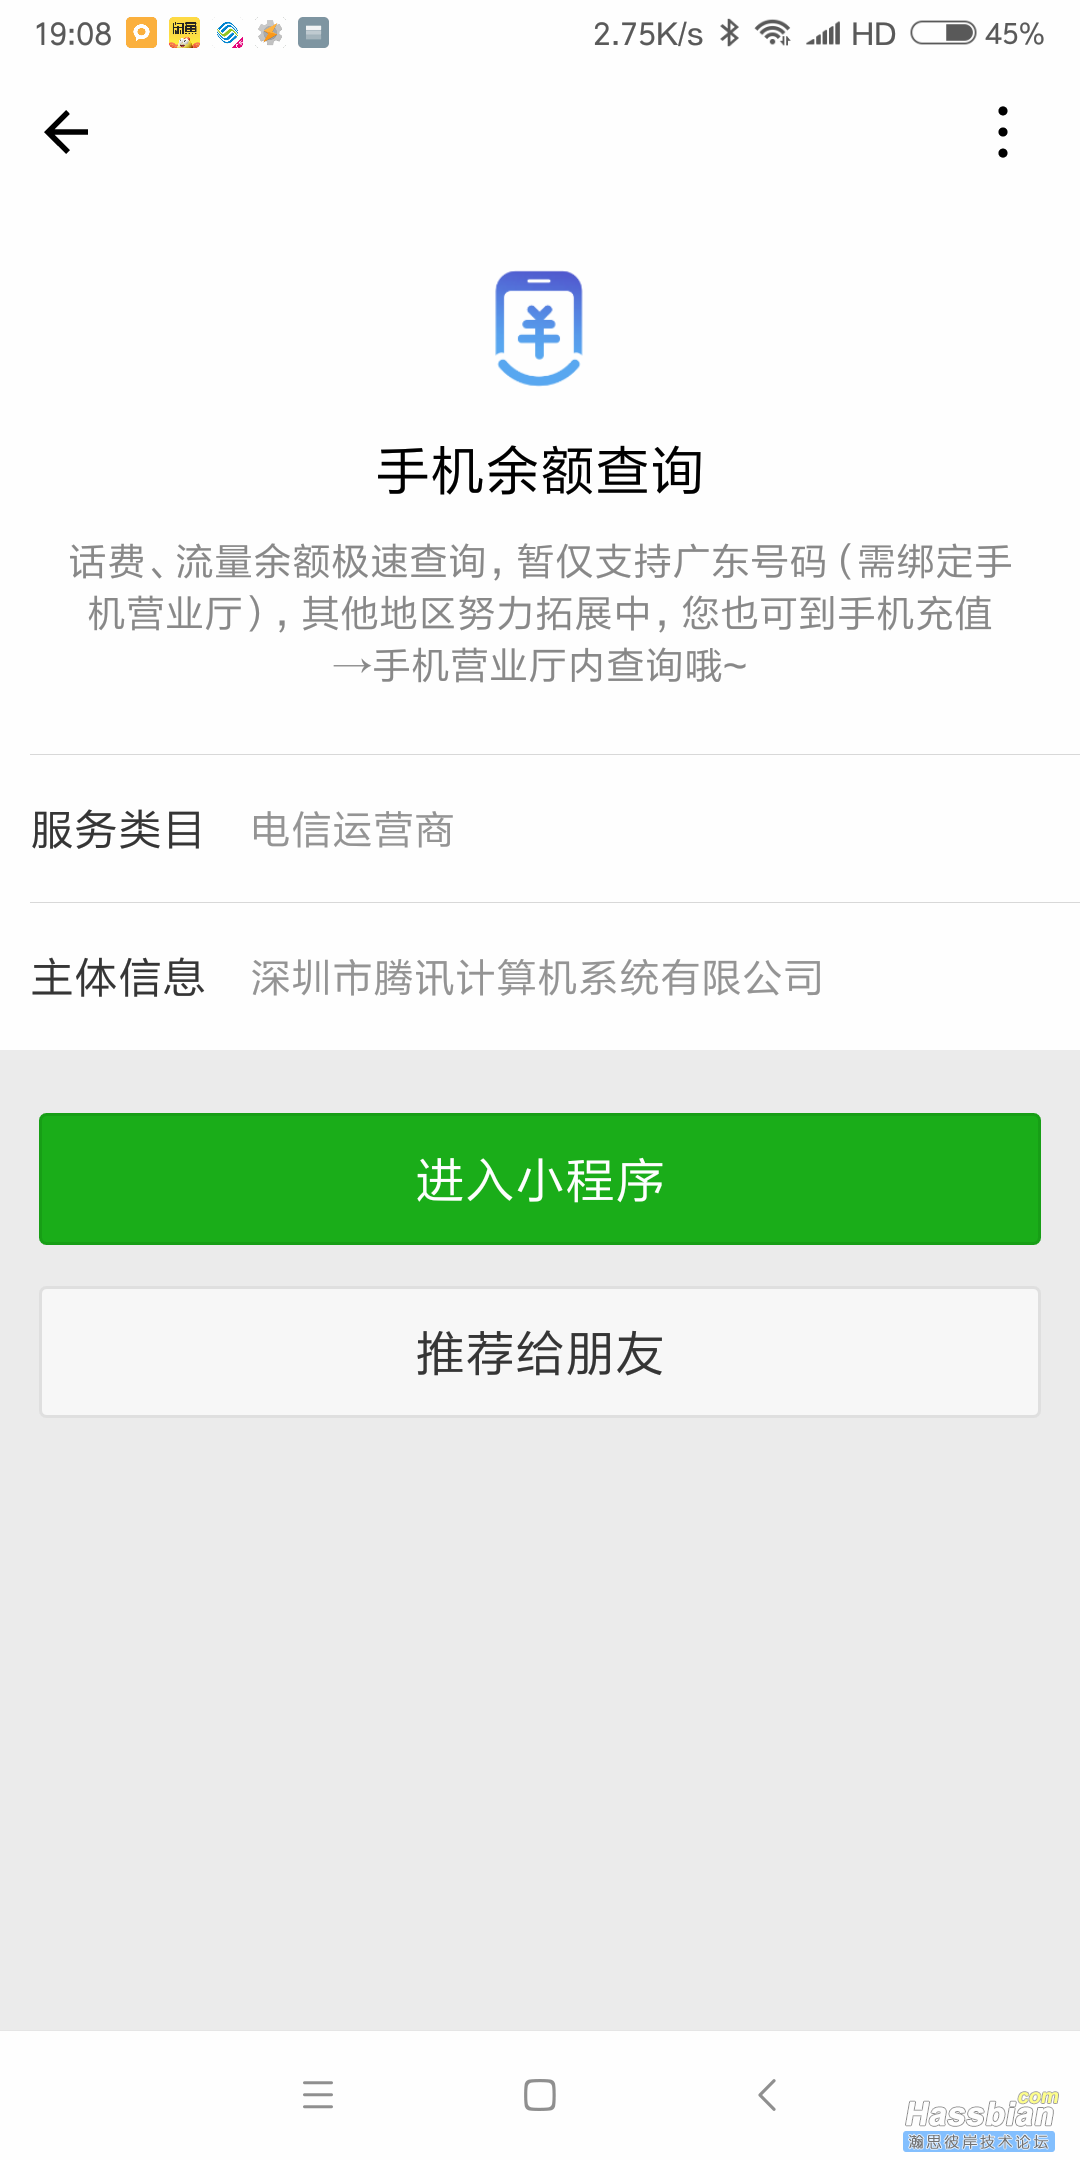 Screenshot_2018-02-08-19-08-45-962_com.tencent.mm.png